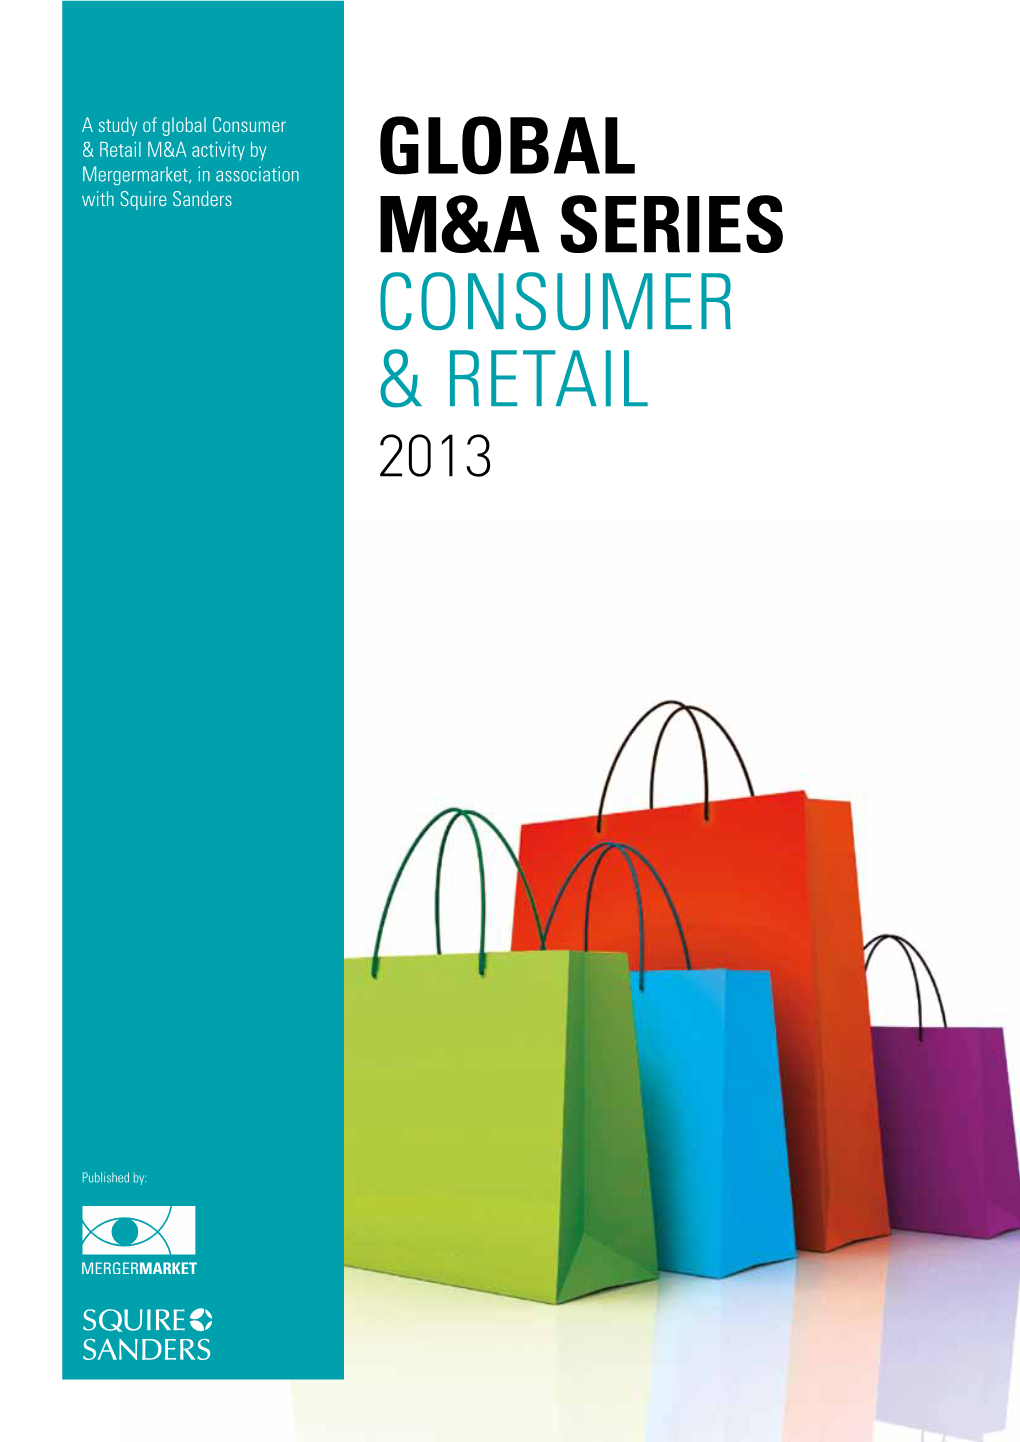 Global M&A Series Consumer & Retail